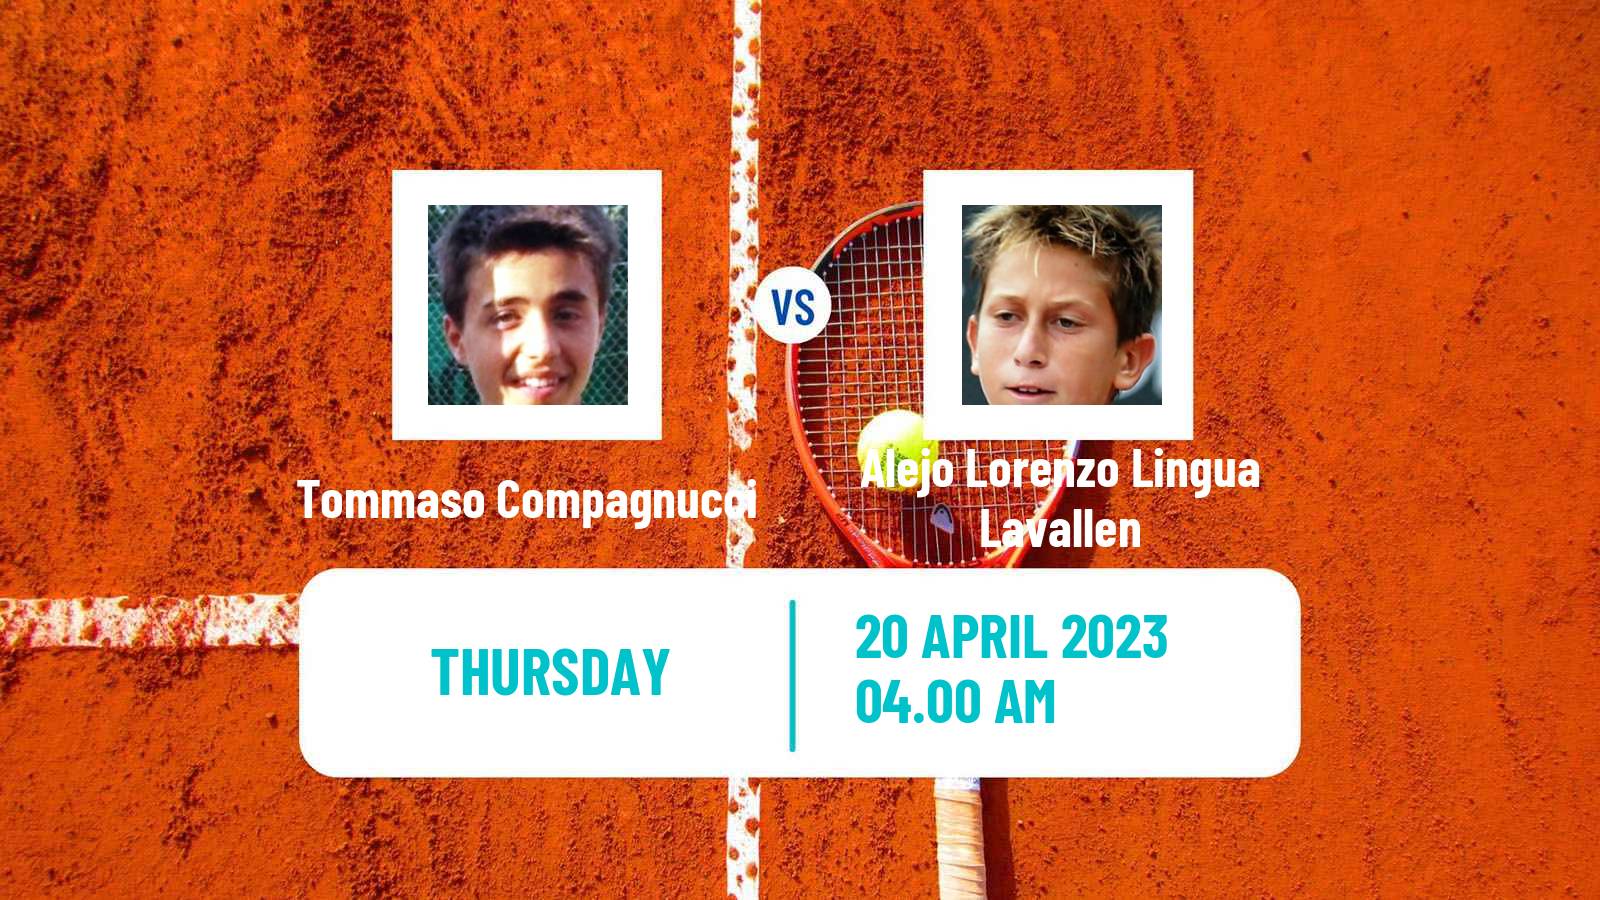 Tennis ITF Tournaments Tommaso Compagnucci - Alejo Lorenzo Lingua Lavallen